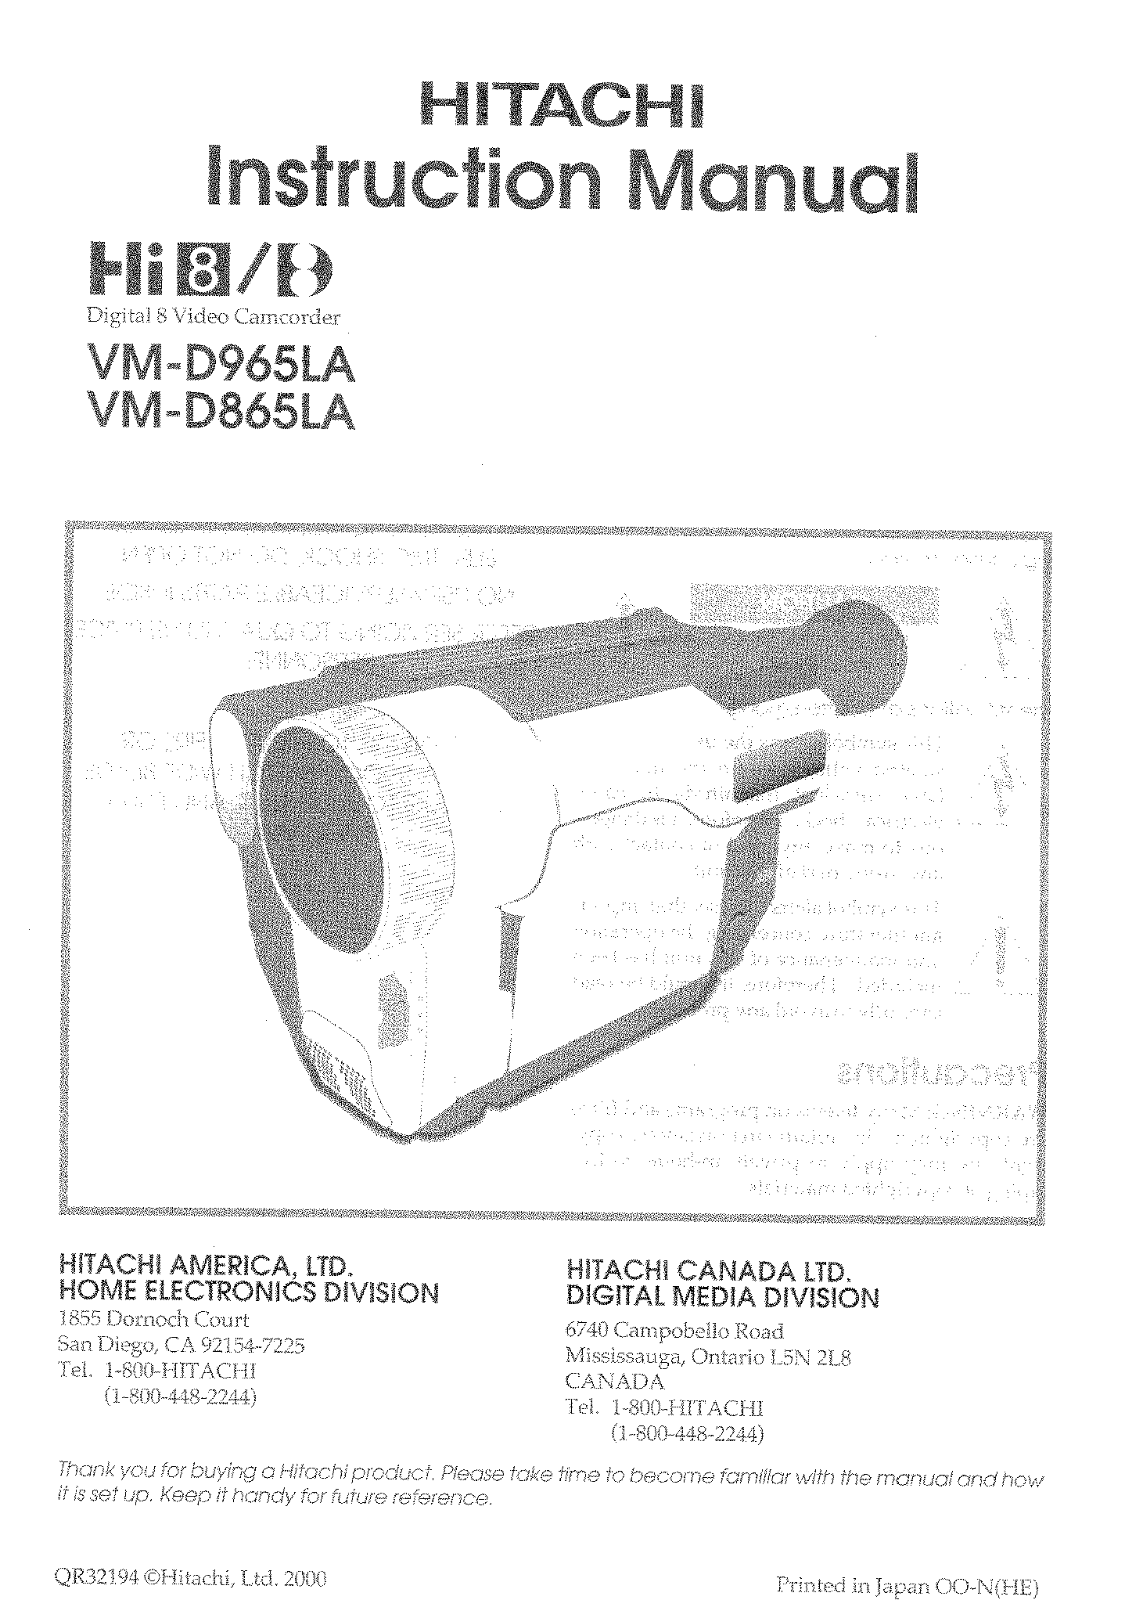 Hitachi VM-D965LA, VM-D865LA Owner’s Manual